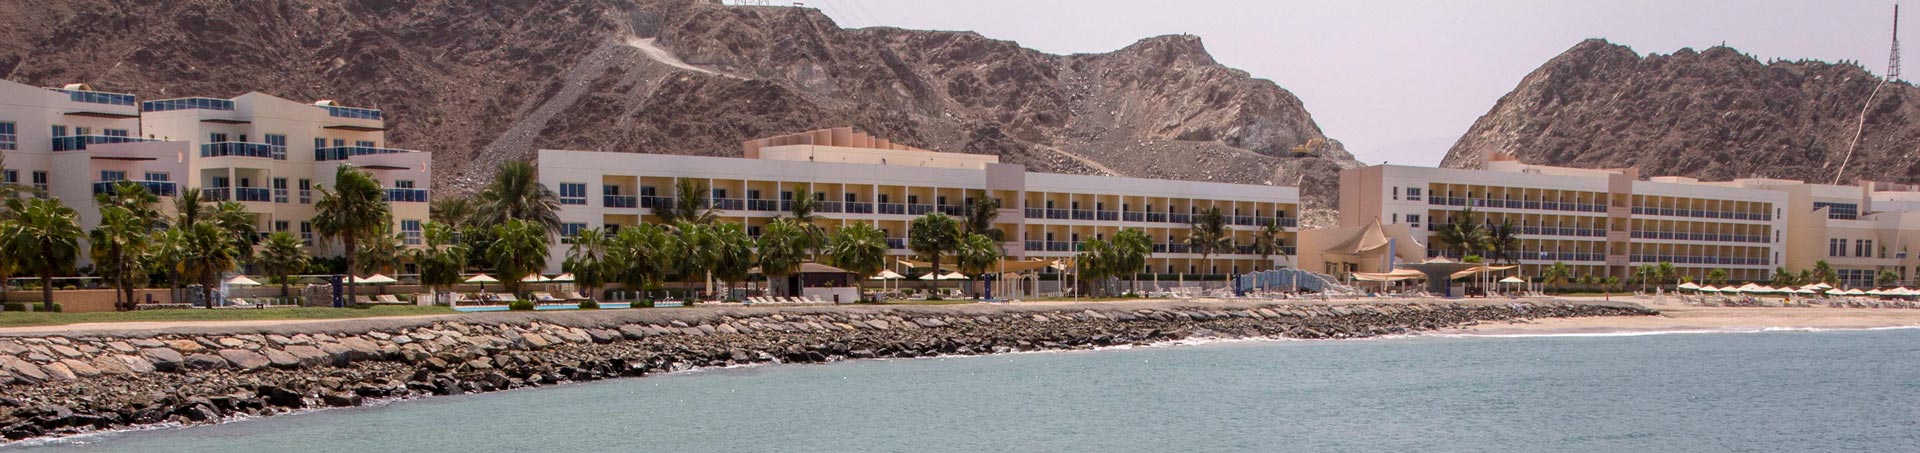 Radisson Blu Hotel Fujairah Panorama